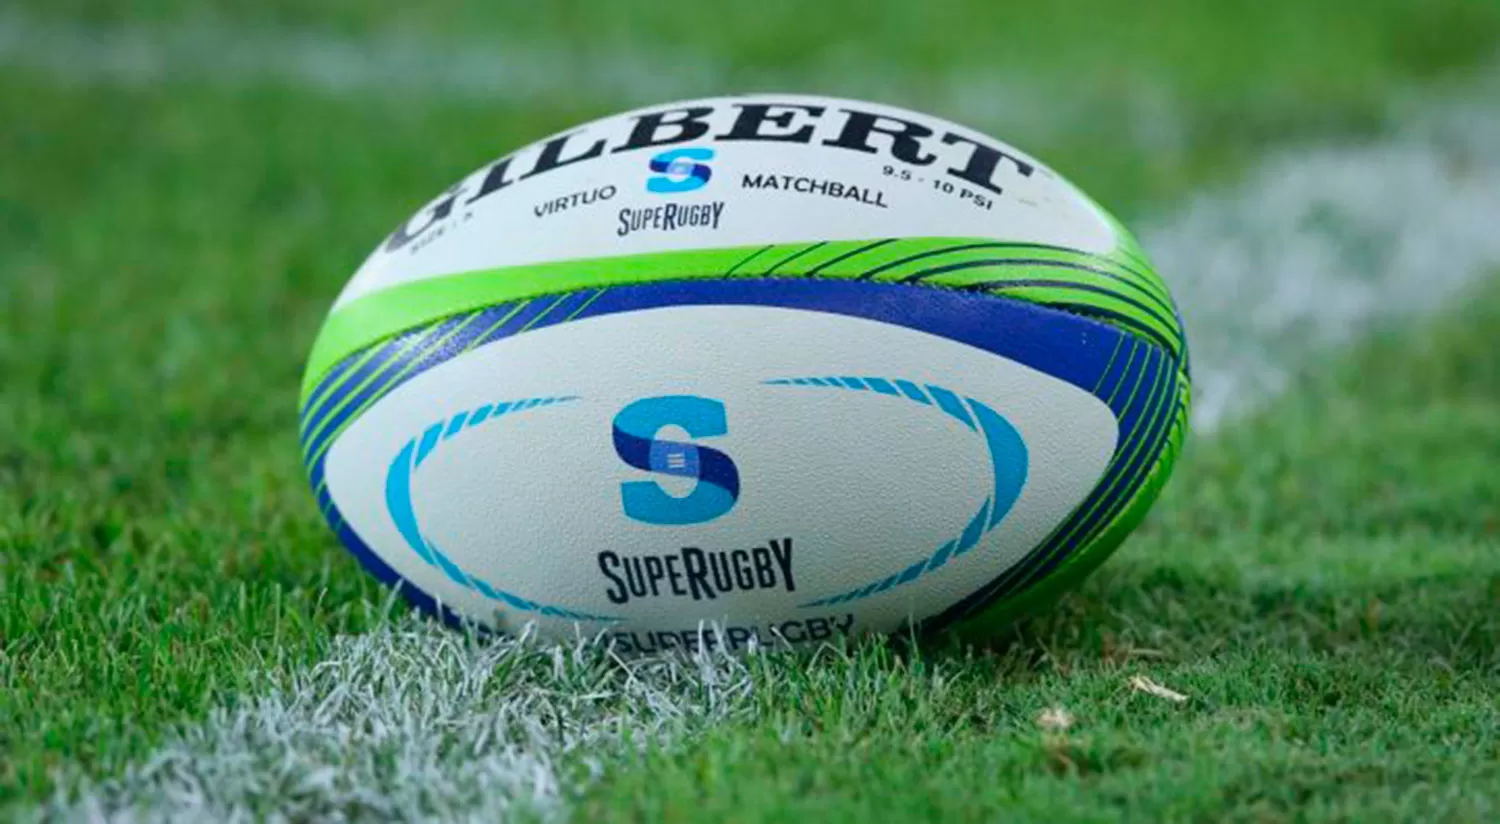 La Superliga y el Super Rugby, lo más destacado del día: hora, TV y el resto de la agenda deportiva